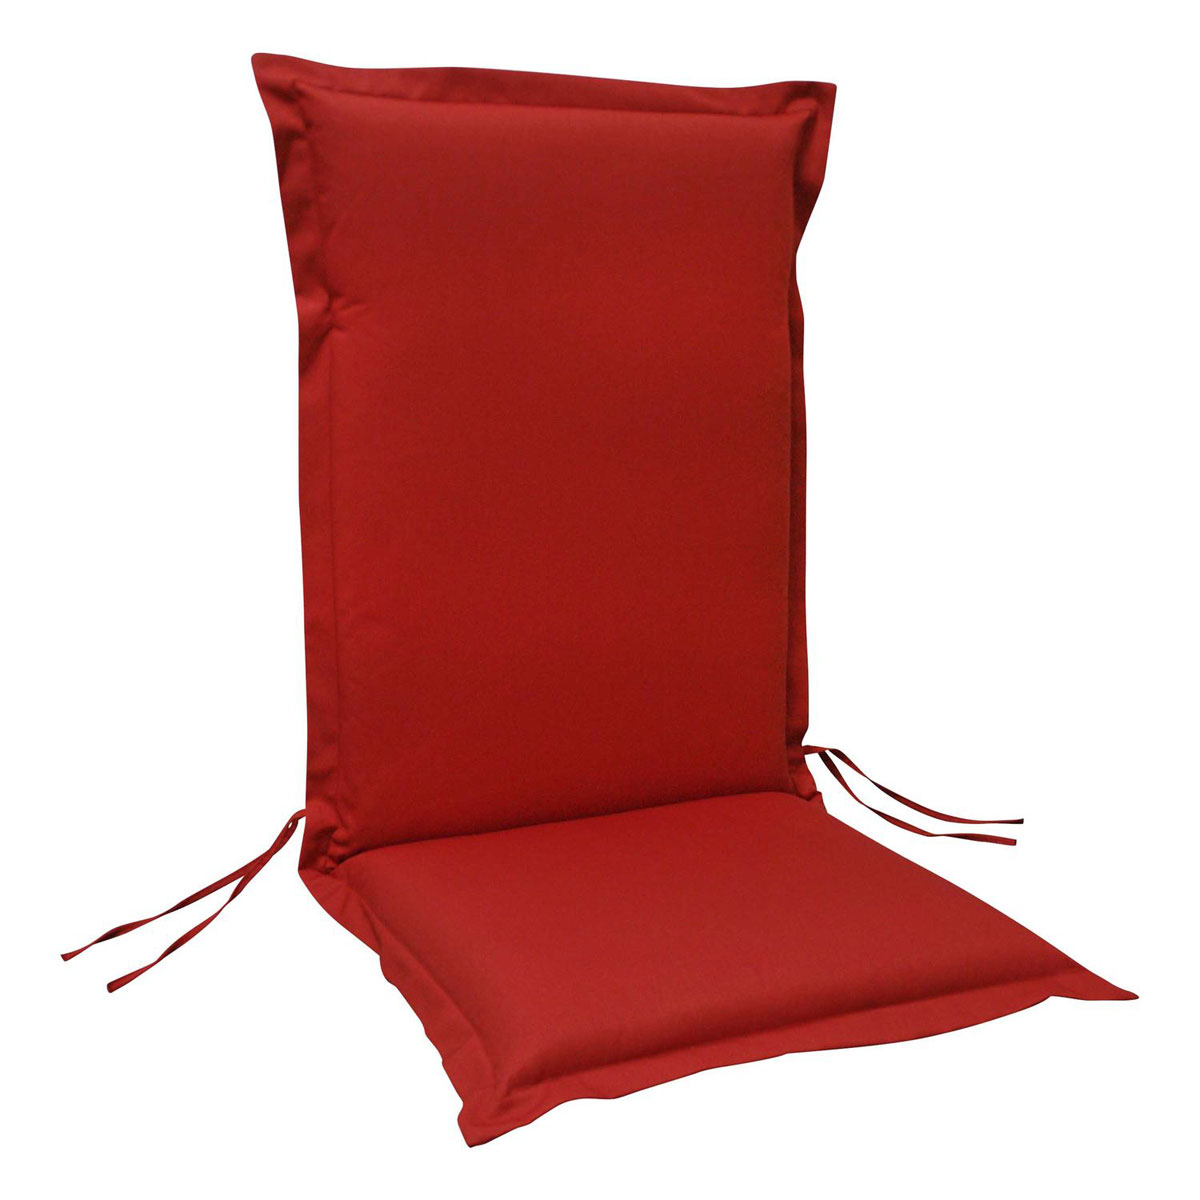 | Sitzauflage Indoba Hochlehner K000021895 1x Polsterauflage extra Premium dick Rot |